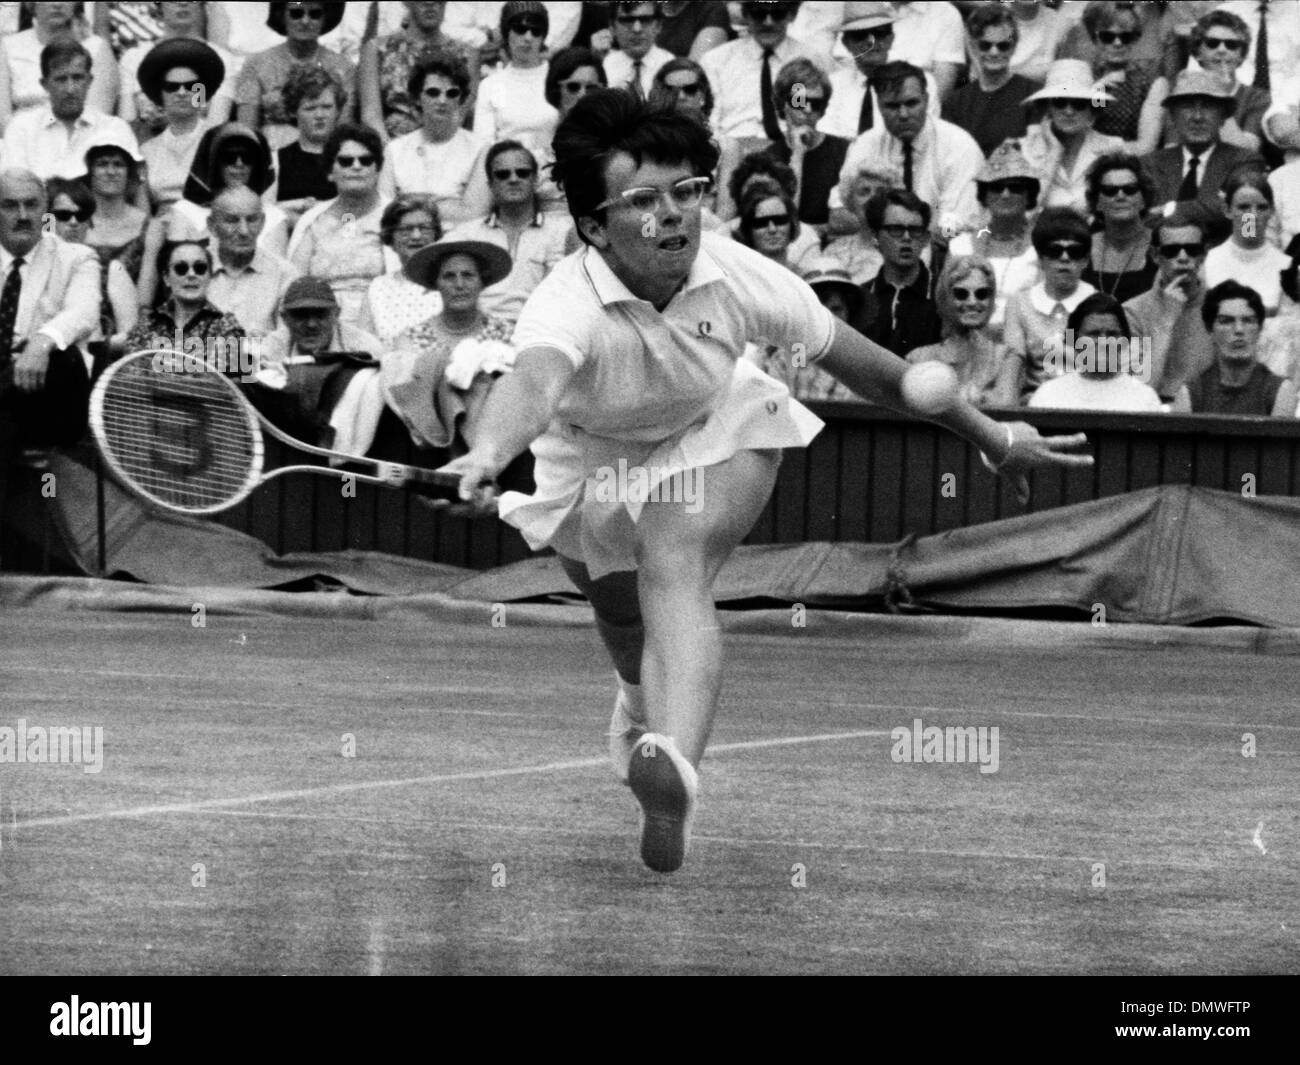 Julio 8, 1967 - Londres, Inglaterra, Reino Unido - El campeón de tenis Billie Jean King-beat ANN JONES en las Damas final de singles en Wimbledon. Foto: El rey va tras el balón durante el partido. (Crédito de la Imagen: © KEYSTONE USA/ZUMAPRESS.com) imágenes Foto de stock